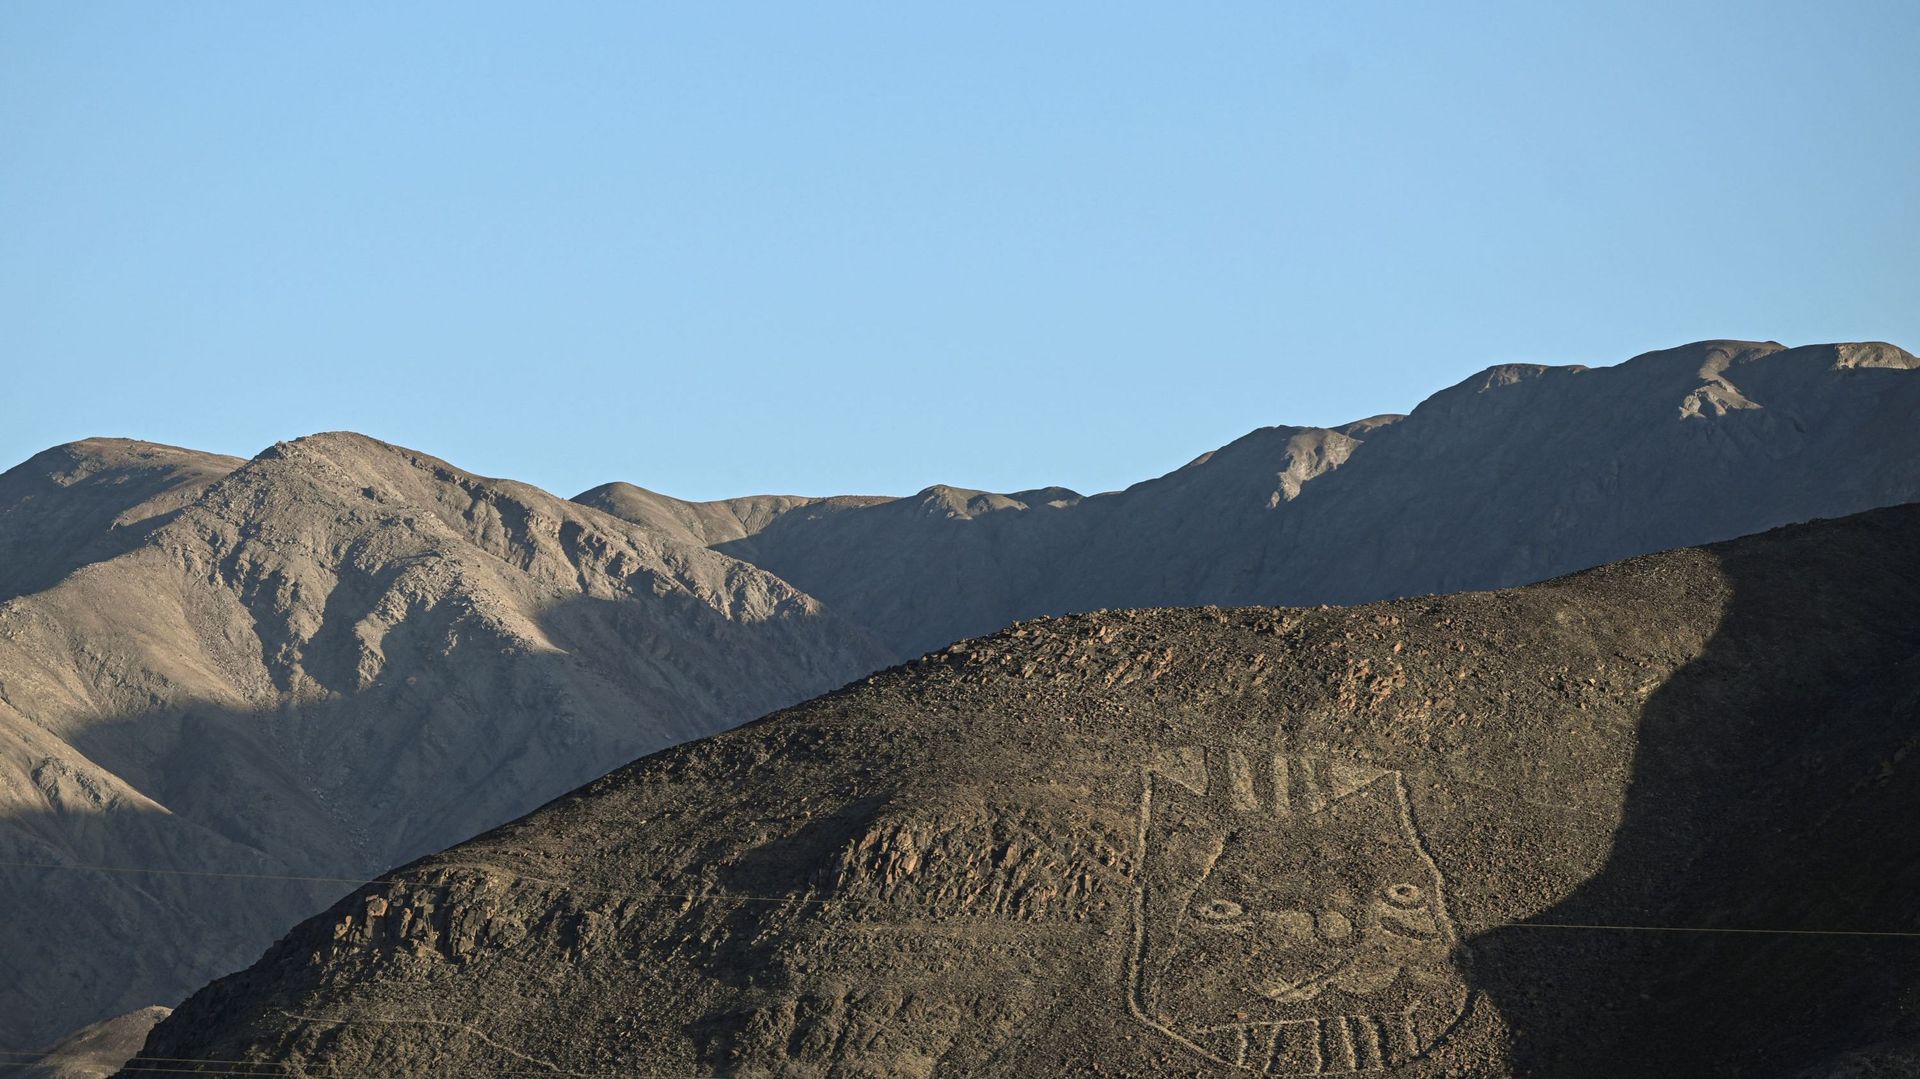 Les géoglyphes sont visibles uniquement de haut, ou de loin lorsqu’ils sont à flanc de colline.